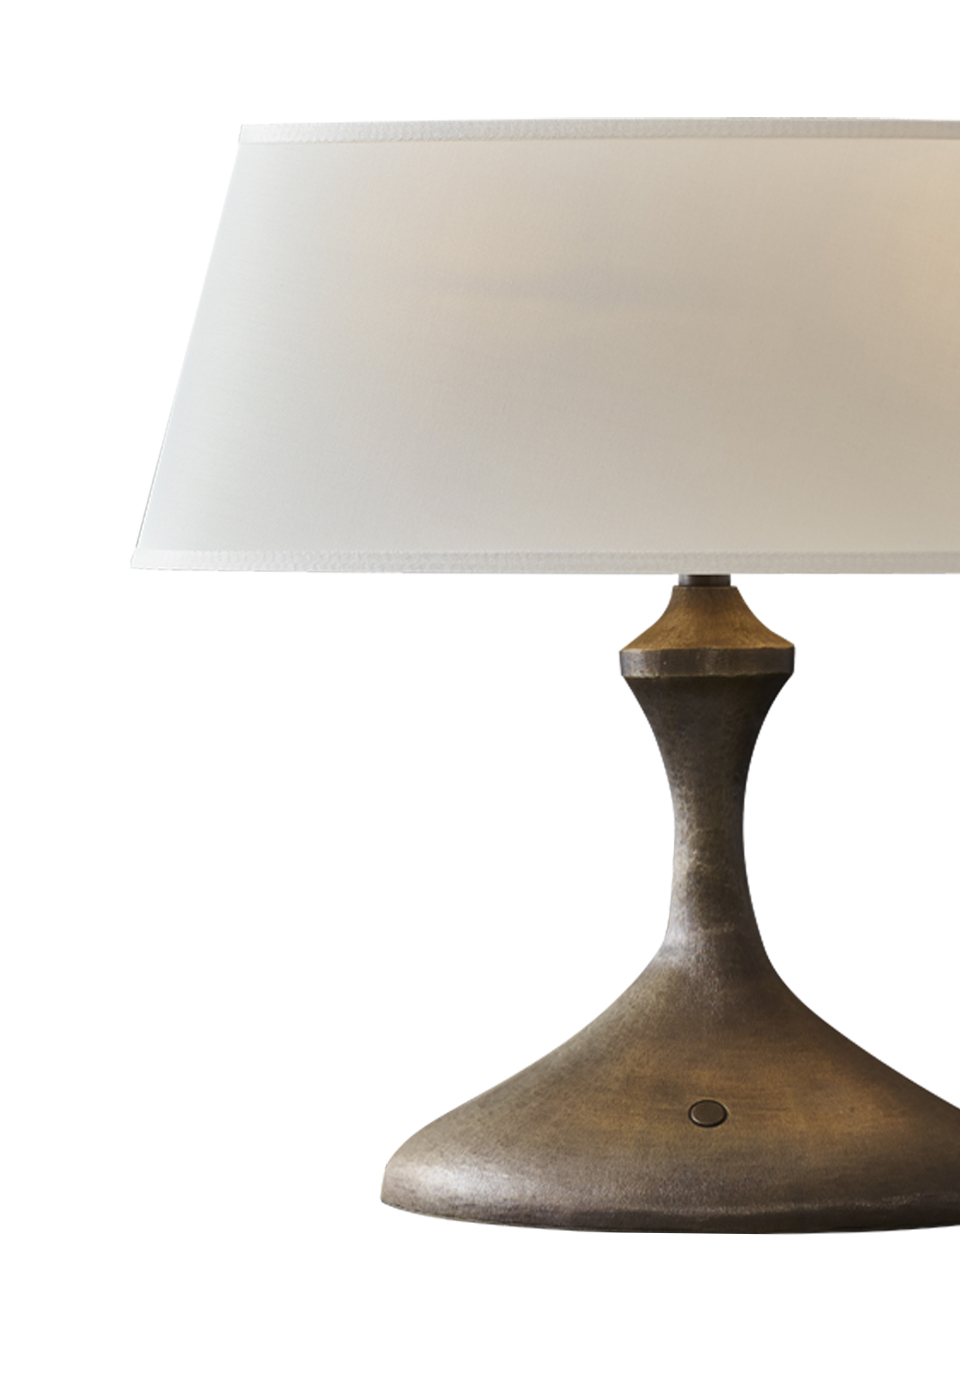 Elisabeth — настольная светодиодная лампа с бронзовым каркасом и льняным, хлопковым или сшитым вручную шелковым абажуром из каталога Promemoria | Promemoria